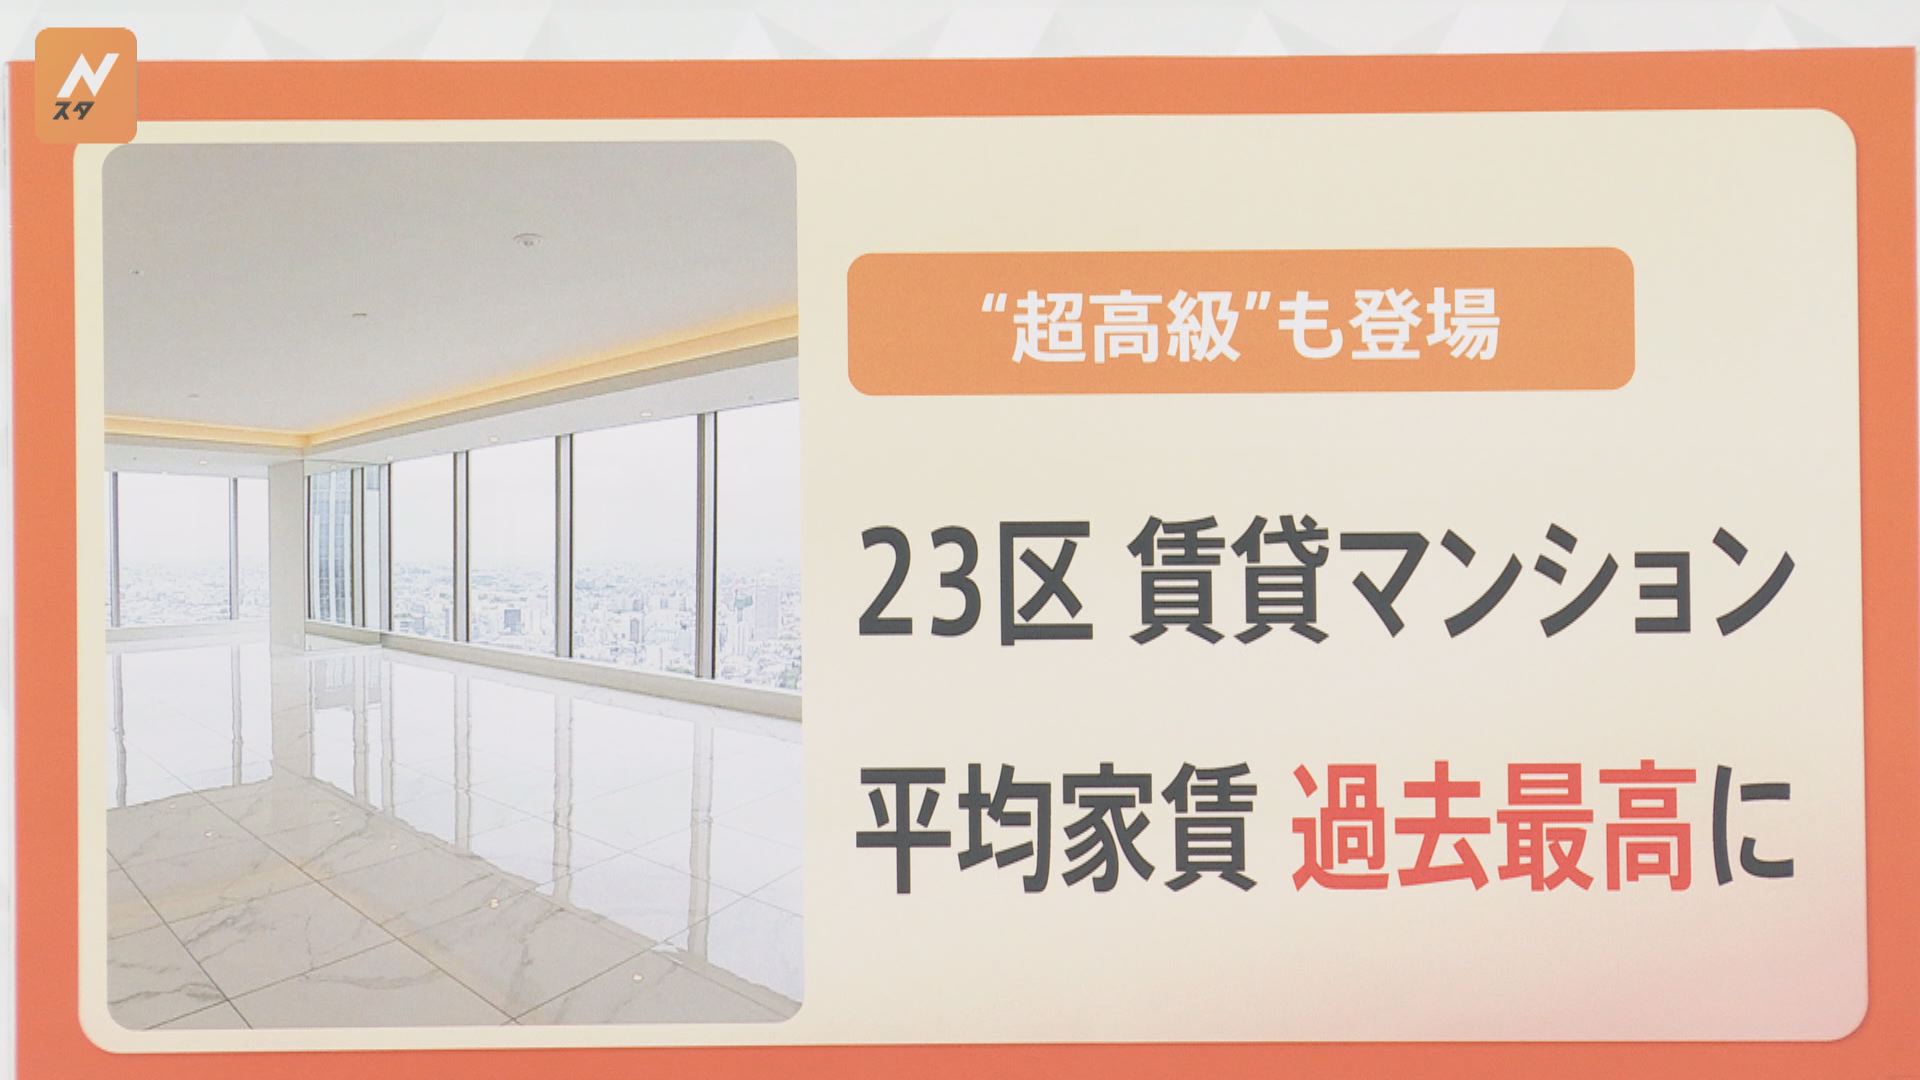 新築分譲マンションの価格高騰で･･･東京23区の賃貸価格も急上昇 マンション選びのポイントは？【解説】